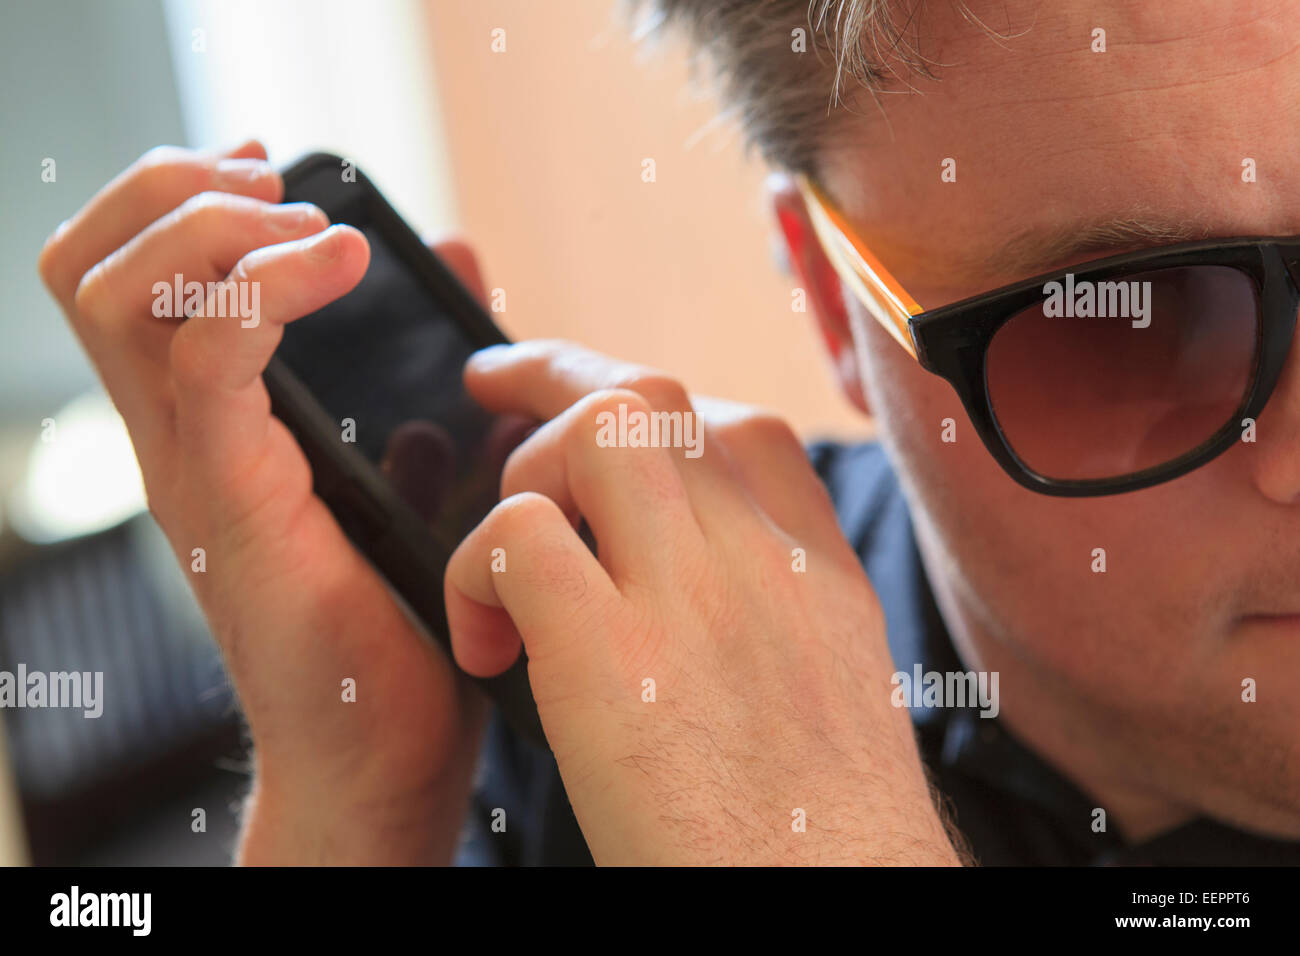 L'homme avec la cécité congénitale à l'aide de dispositifs facilitant l'écoute dans son téléphone cellulaire Banque D'Images